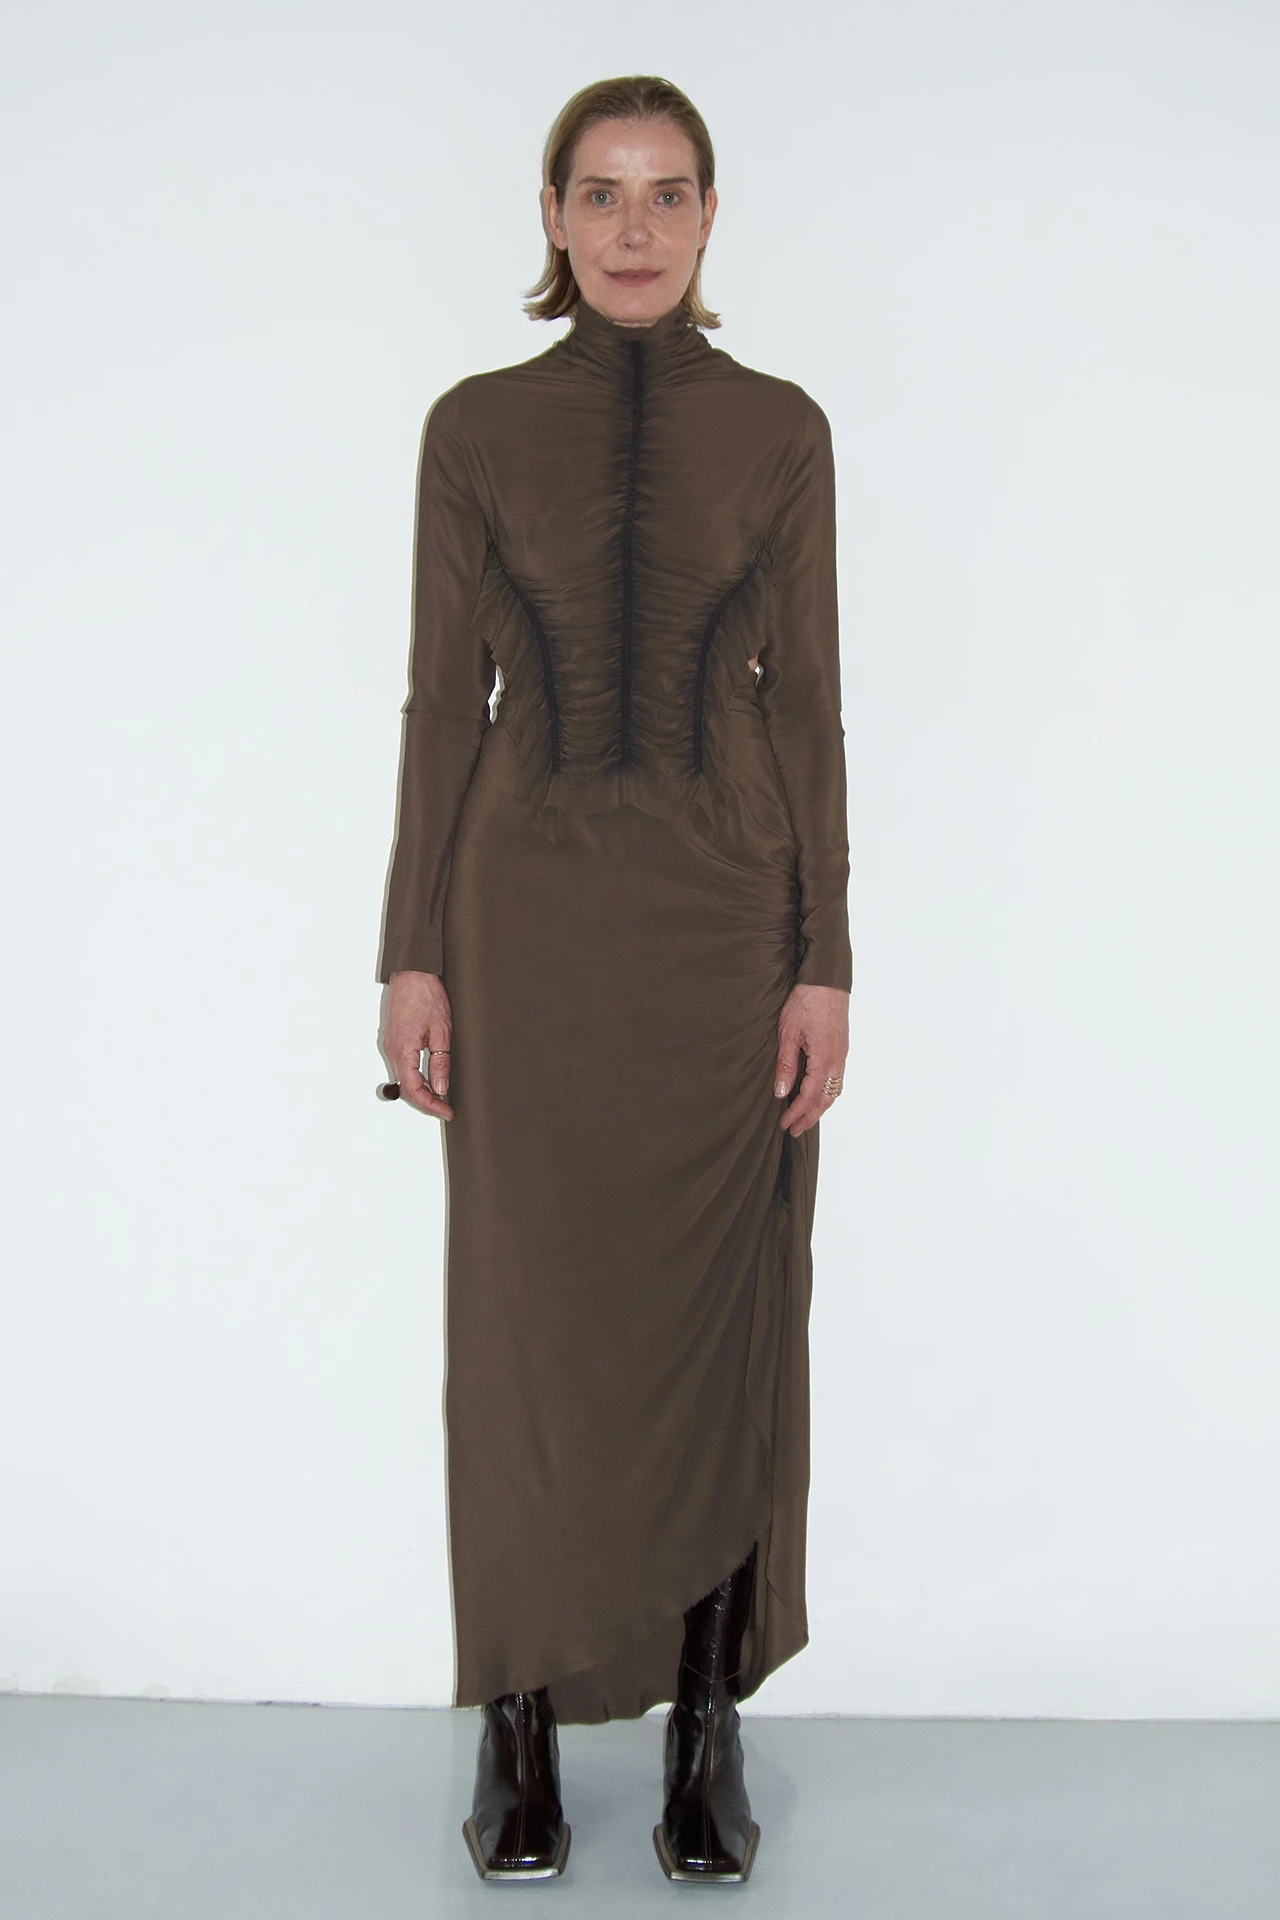 ec-silva-brown-top-ze-skirt-01